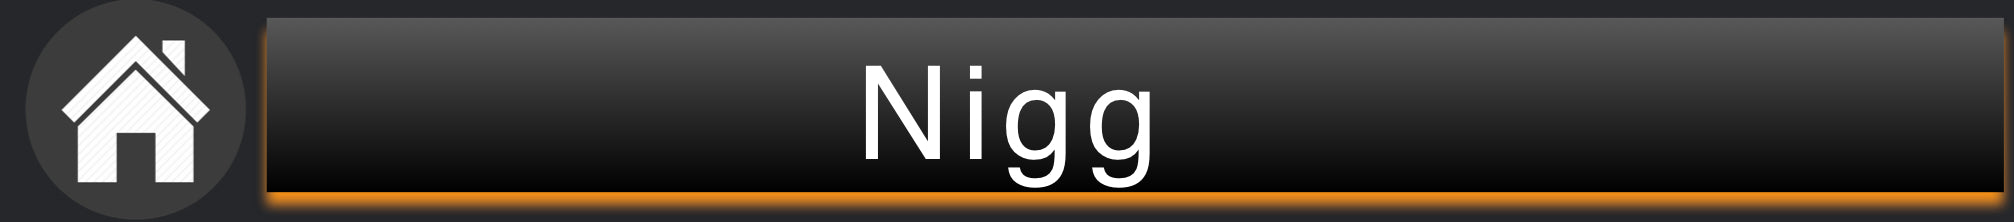 Nigg